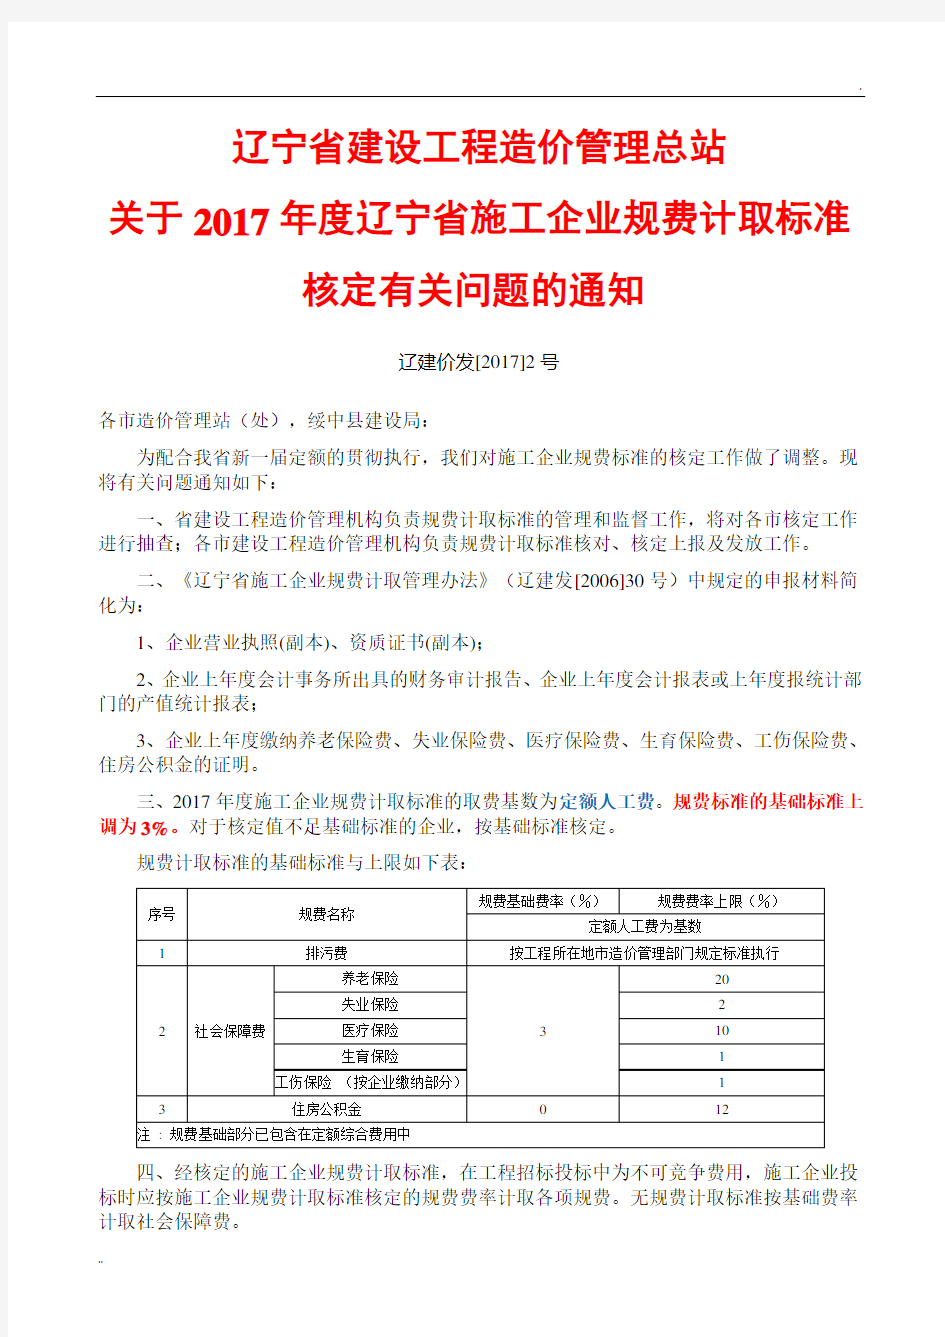 辽宁省建设工程造价管理总站(2017)2号